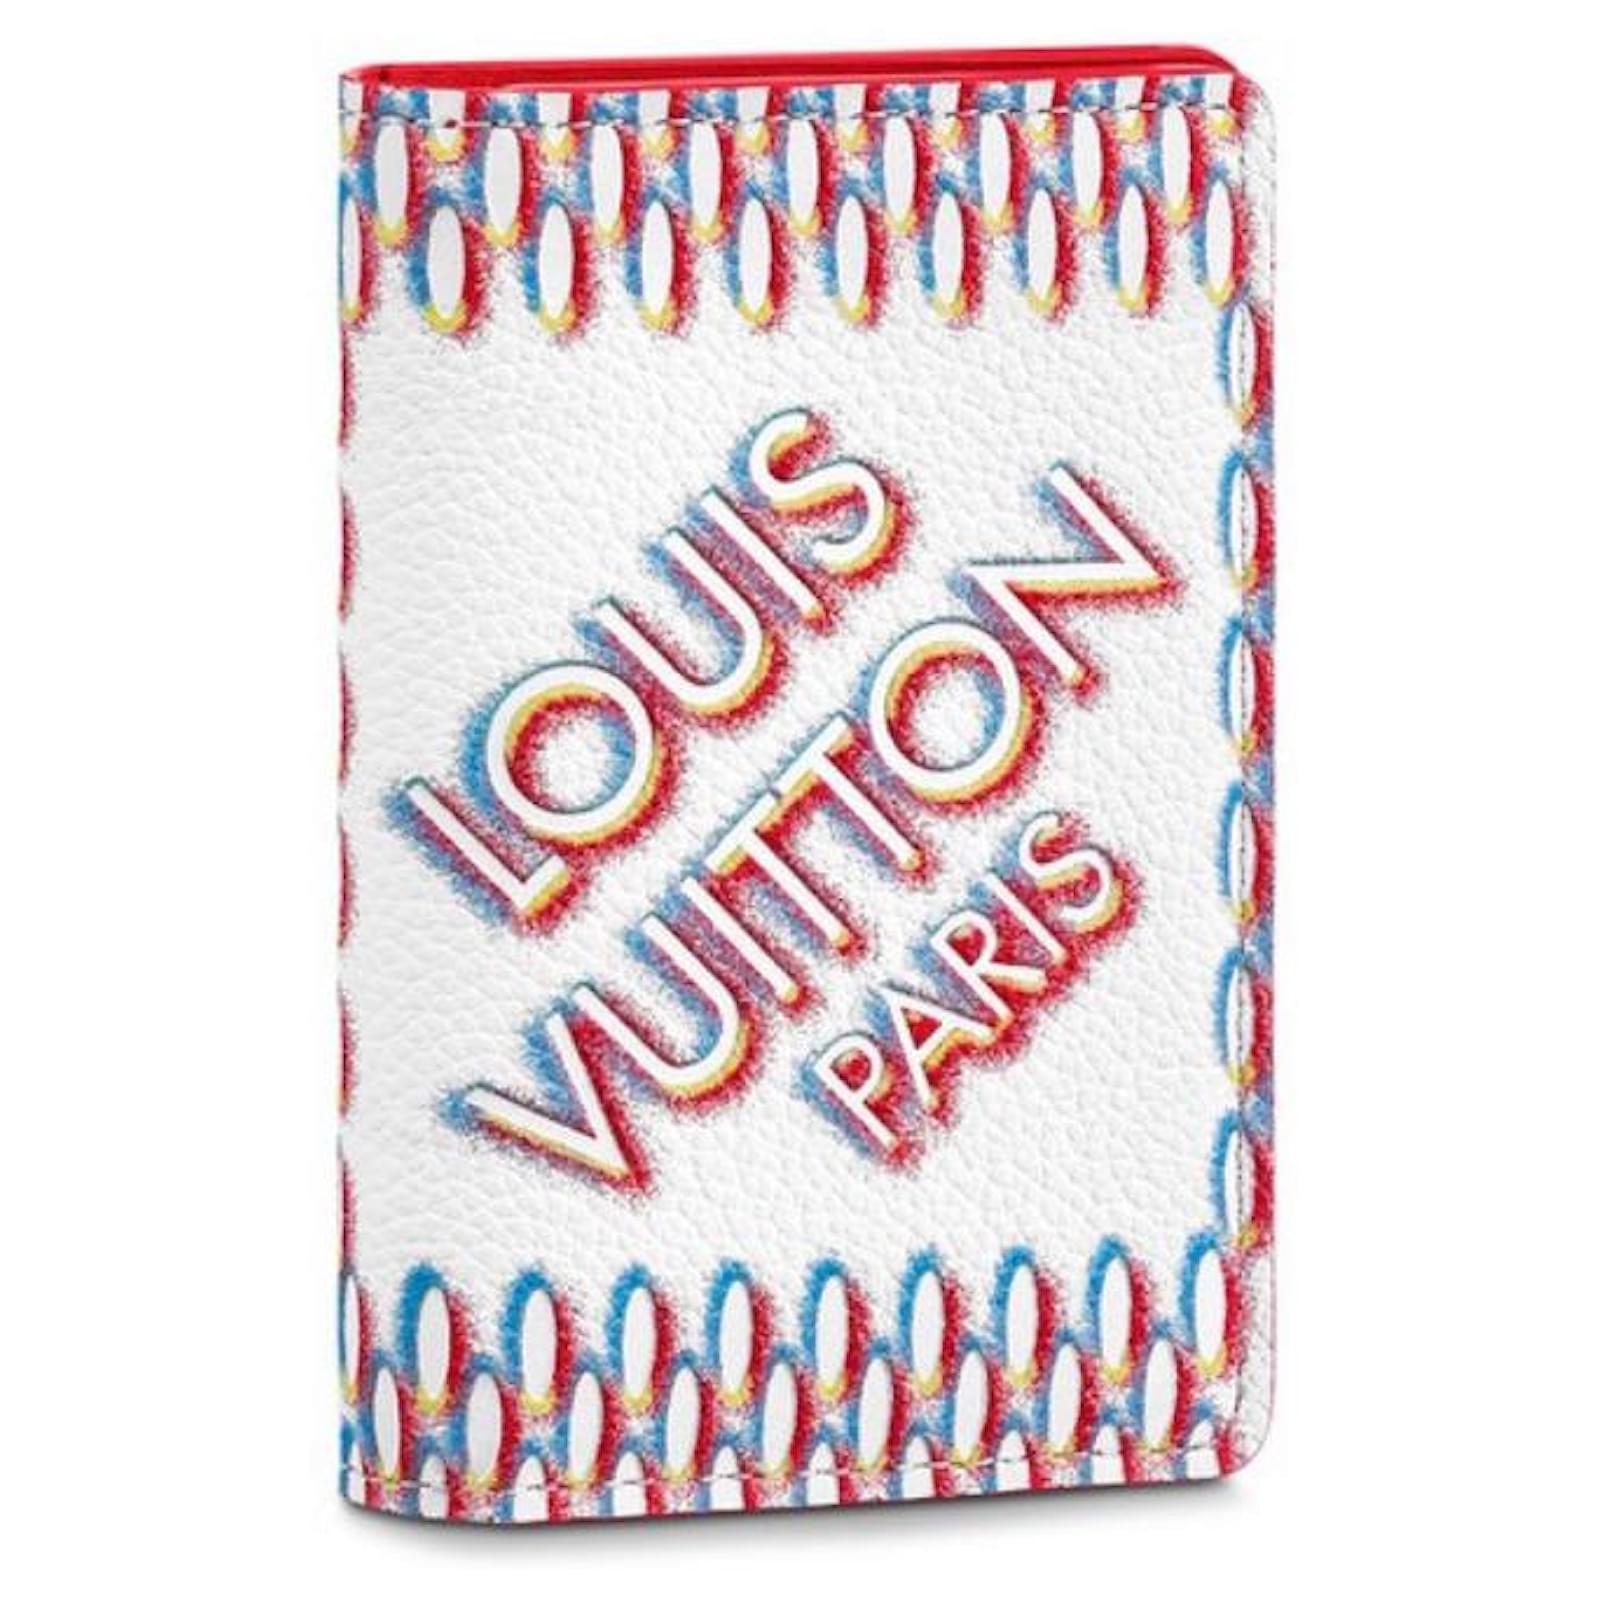 LOUIS VUITTON Monogram Upside Down Card ID Holder Pocket Organizer